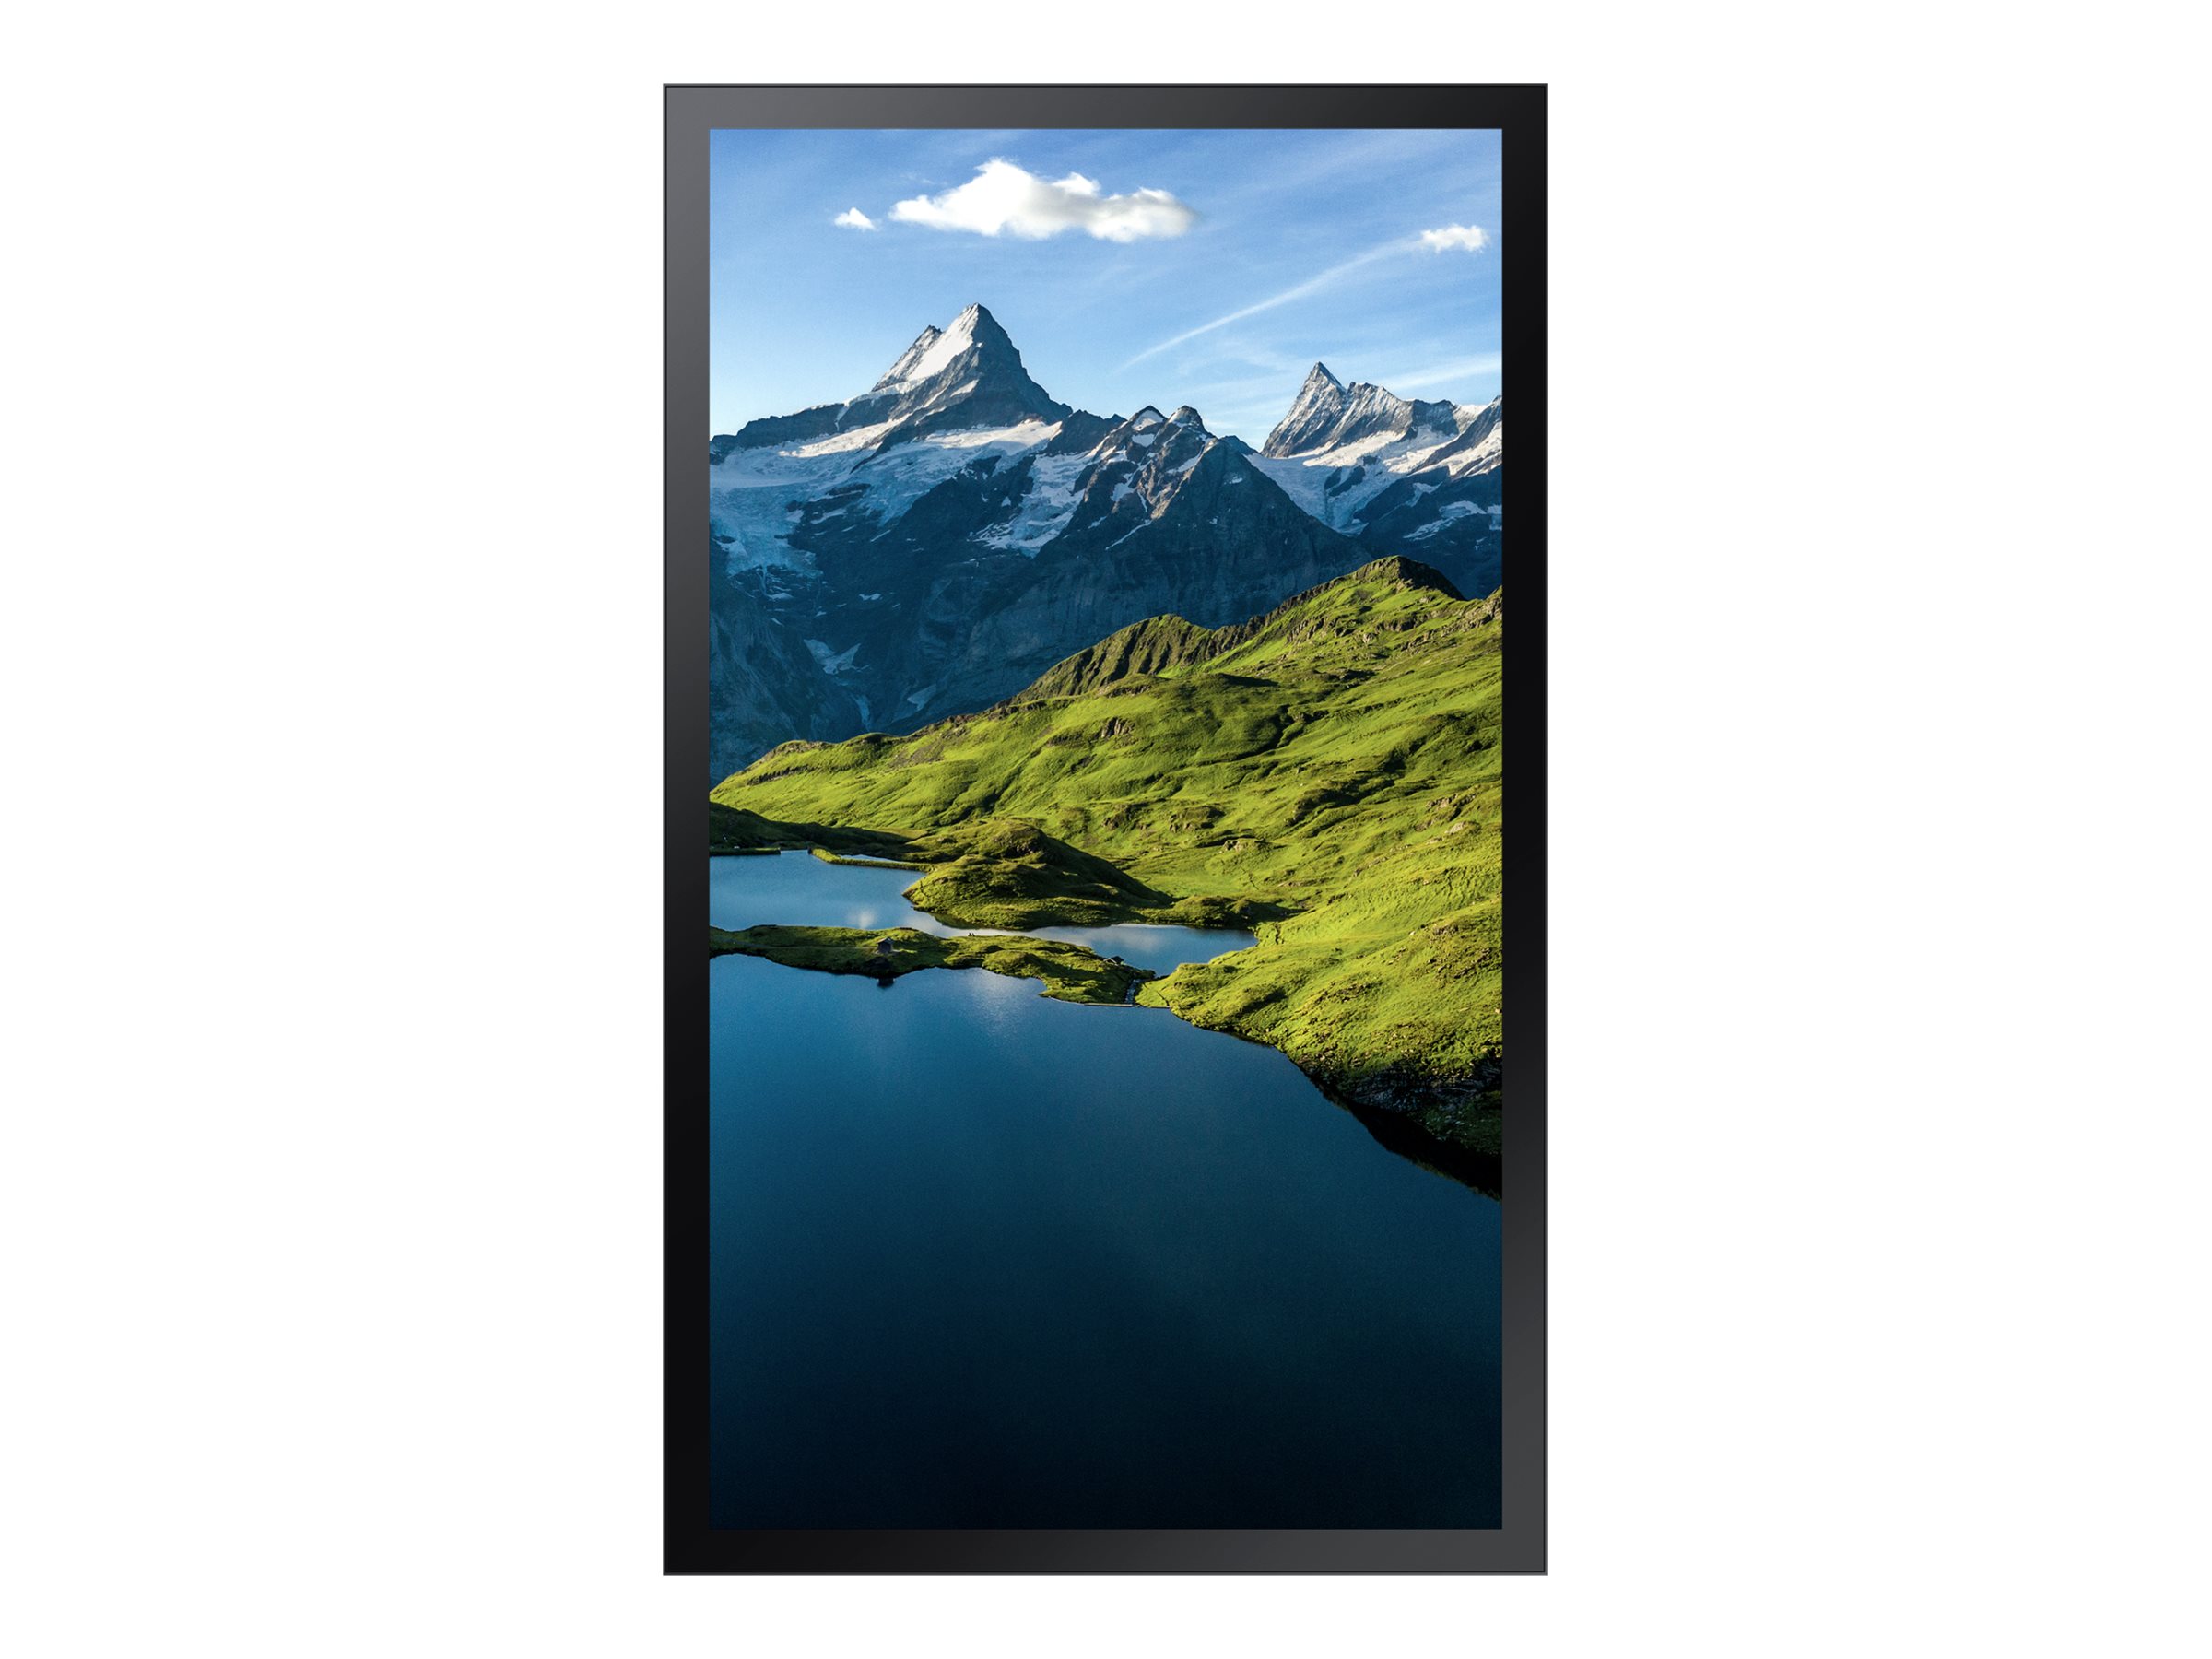 Samsung OH75A - Classe de diagonale 75" (74.5" visualisable) - OHA Series écran LCD rétro-éclairé par LED - signalisation numérique extérieur - soleil total - 4K UHD (2160p) 3840 x 2160 - Direct LED - noir - LH75OHAEBGBXEN - Écrans de signalisation numérique